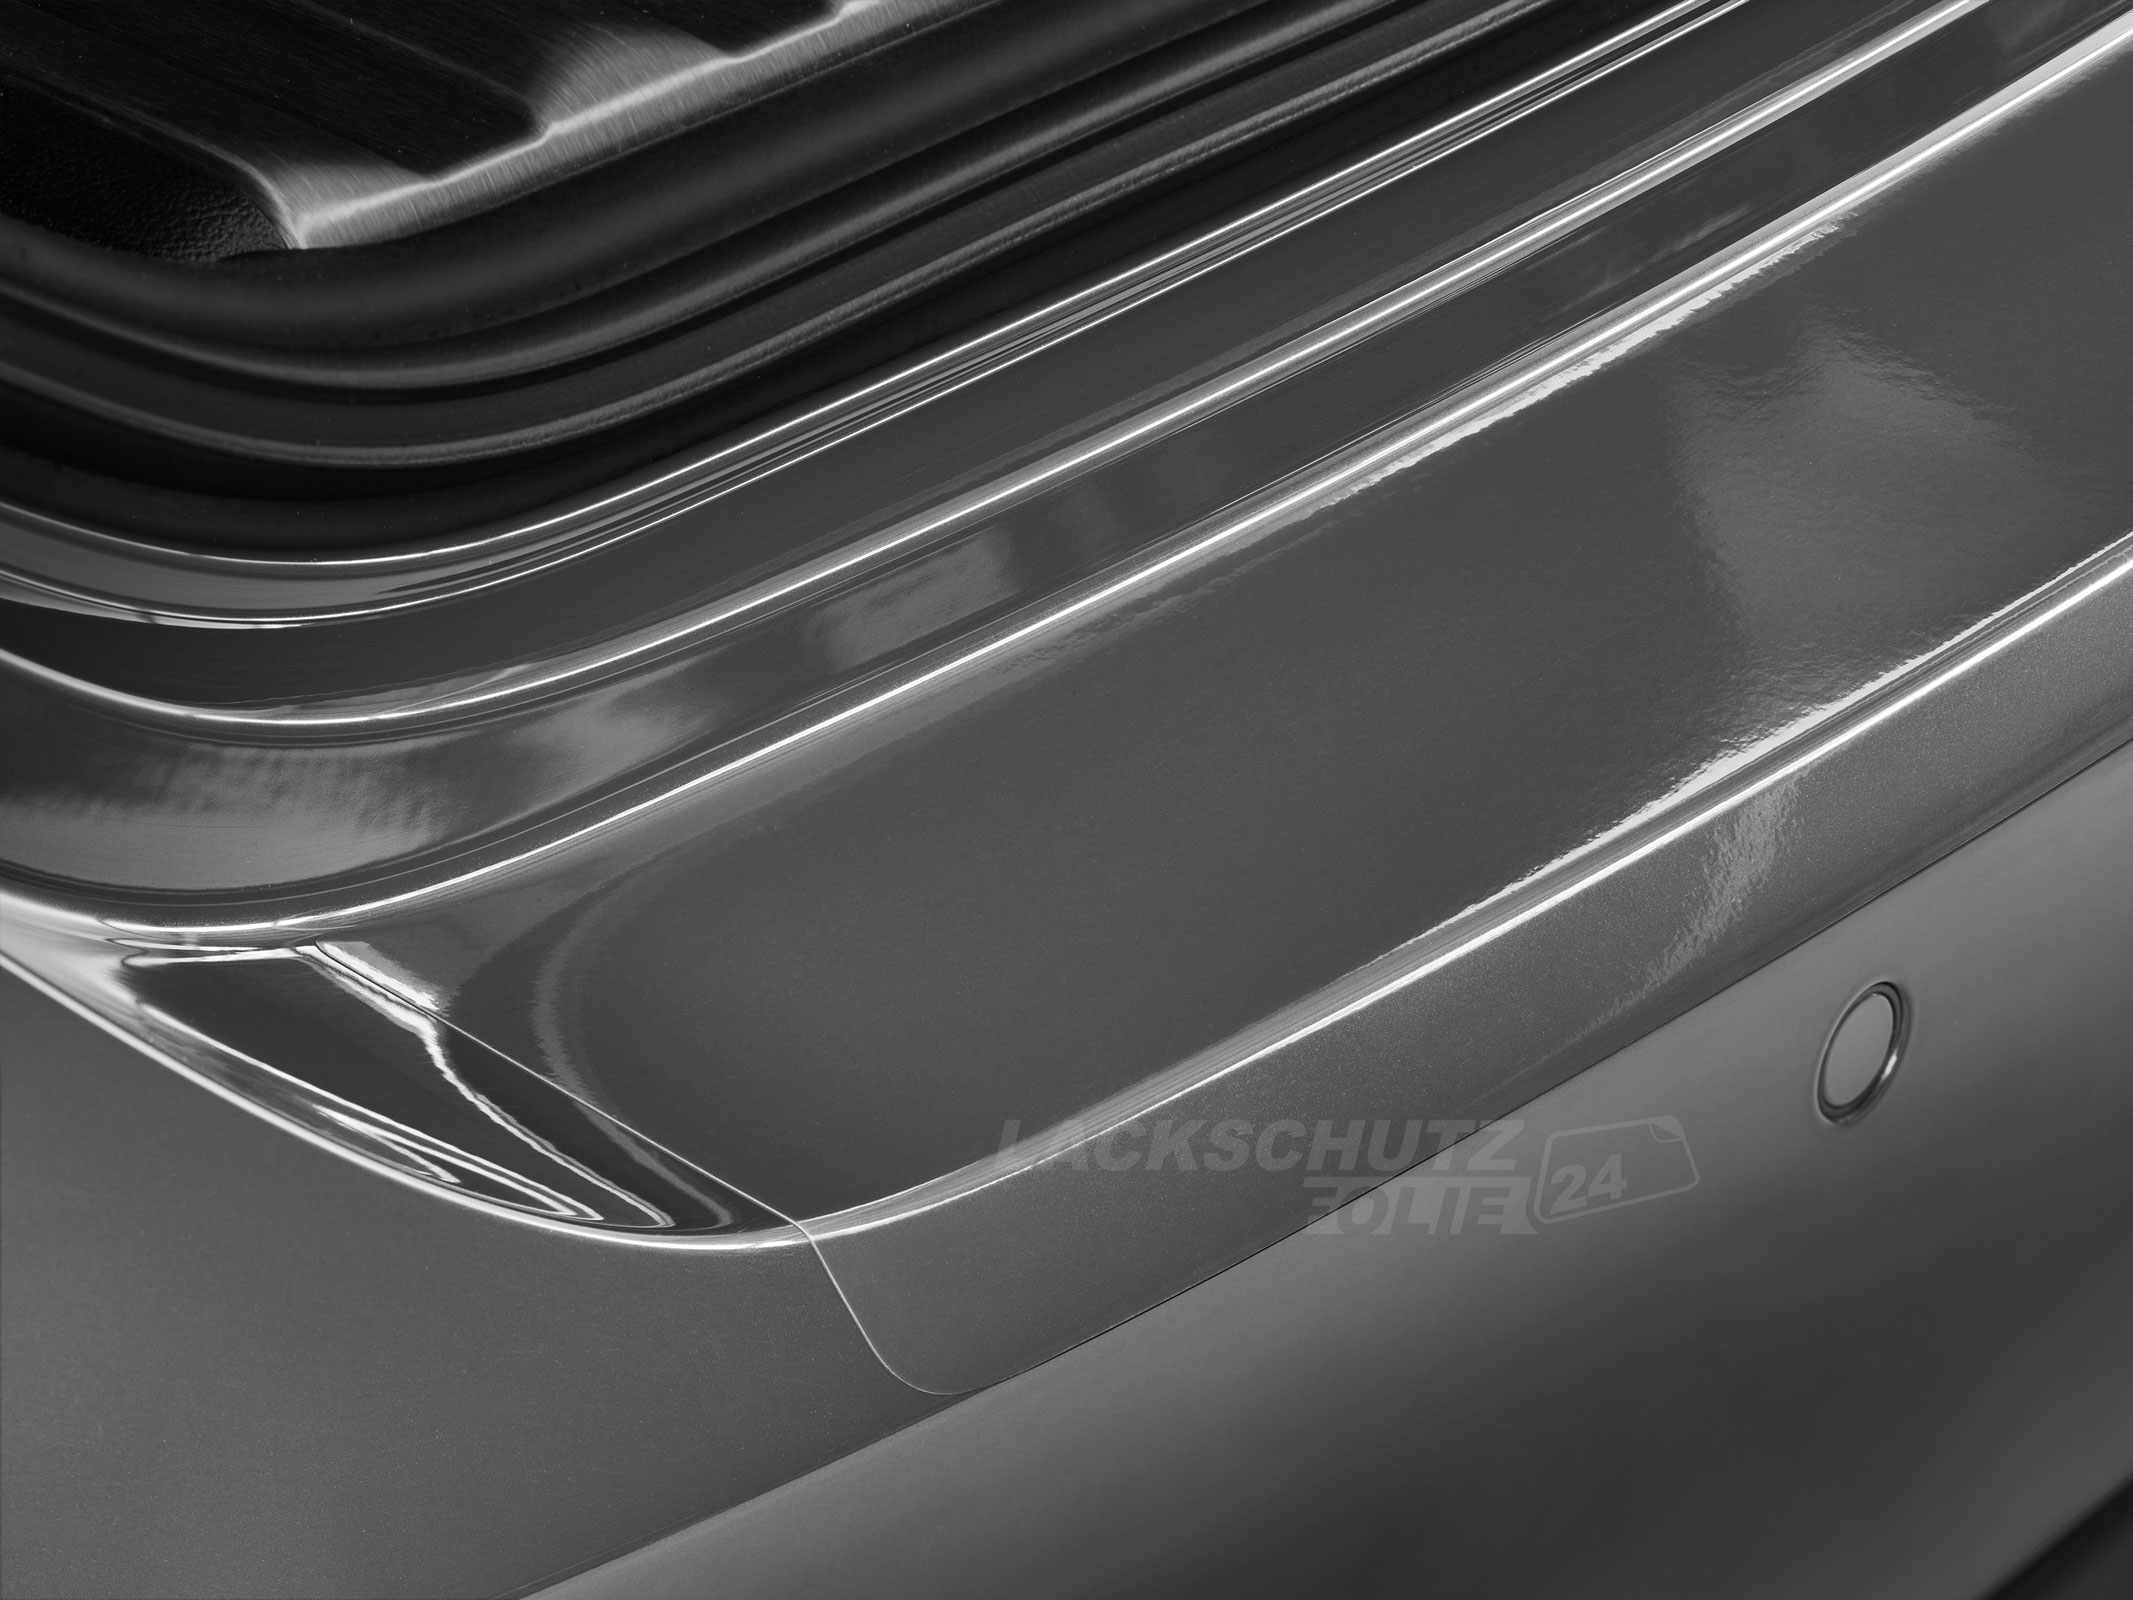 Ladekantenschutzfolie - Transparent Glatt Hochglänzend 150 µm stark für Hyundai Santa Fe Typ TM, BJ 08/2018-10/2020